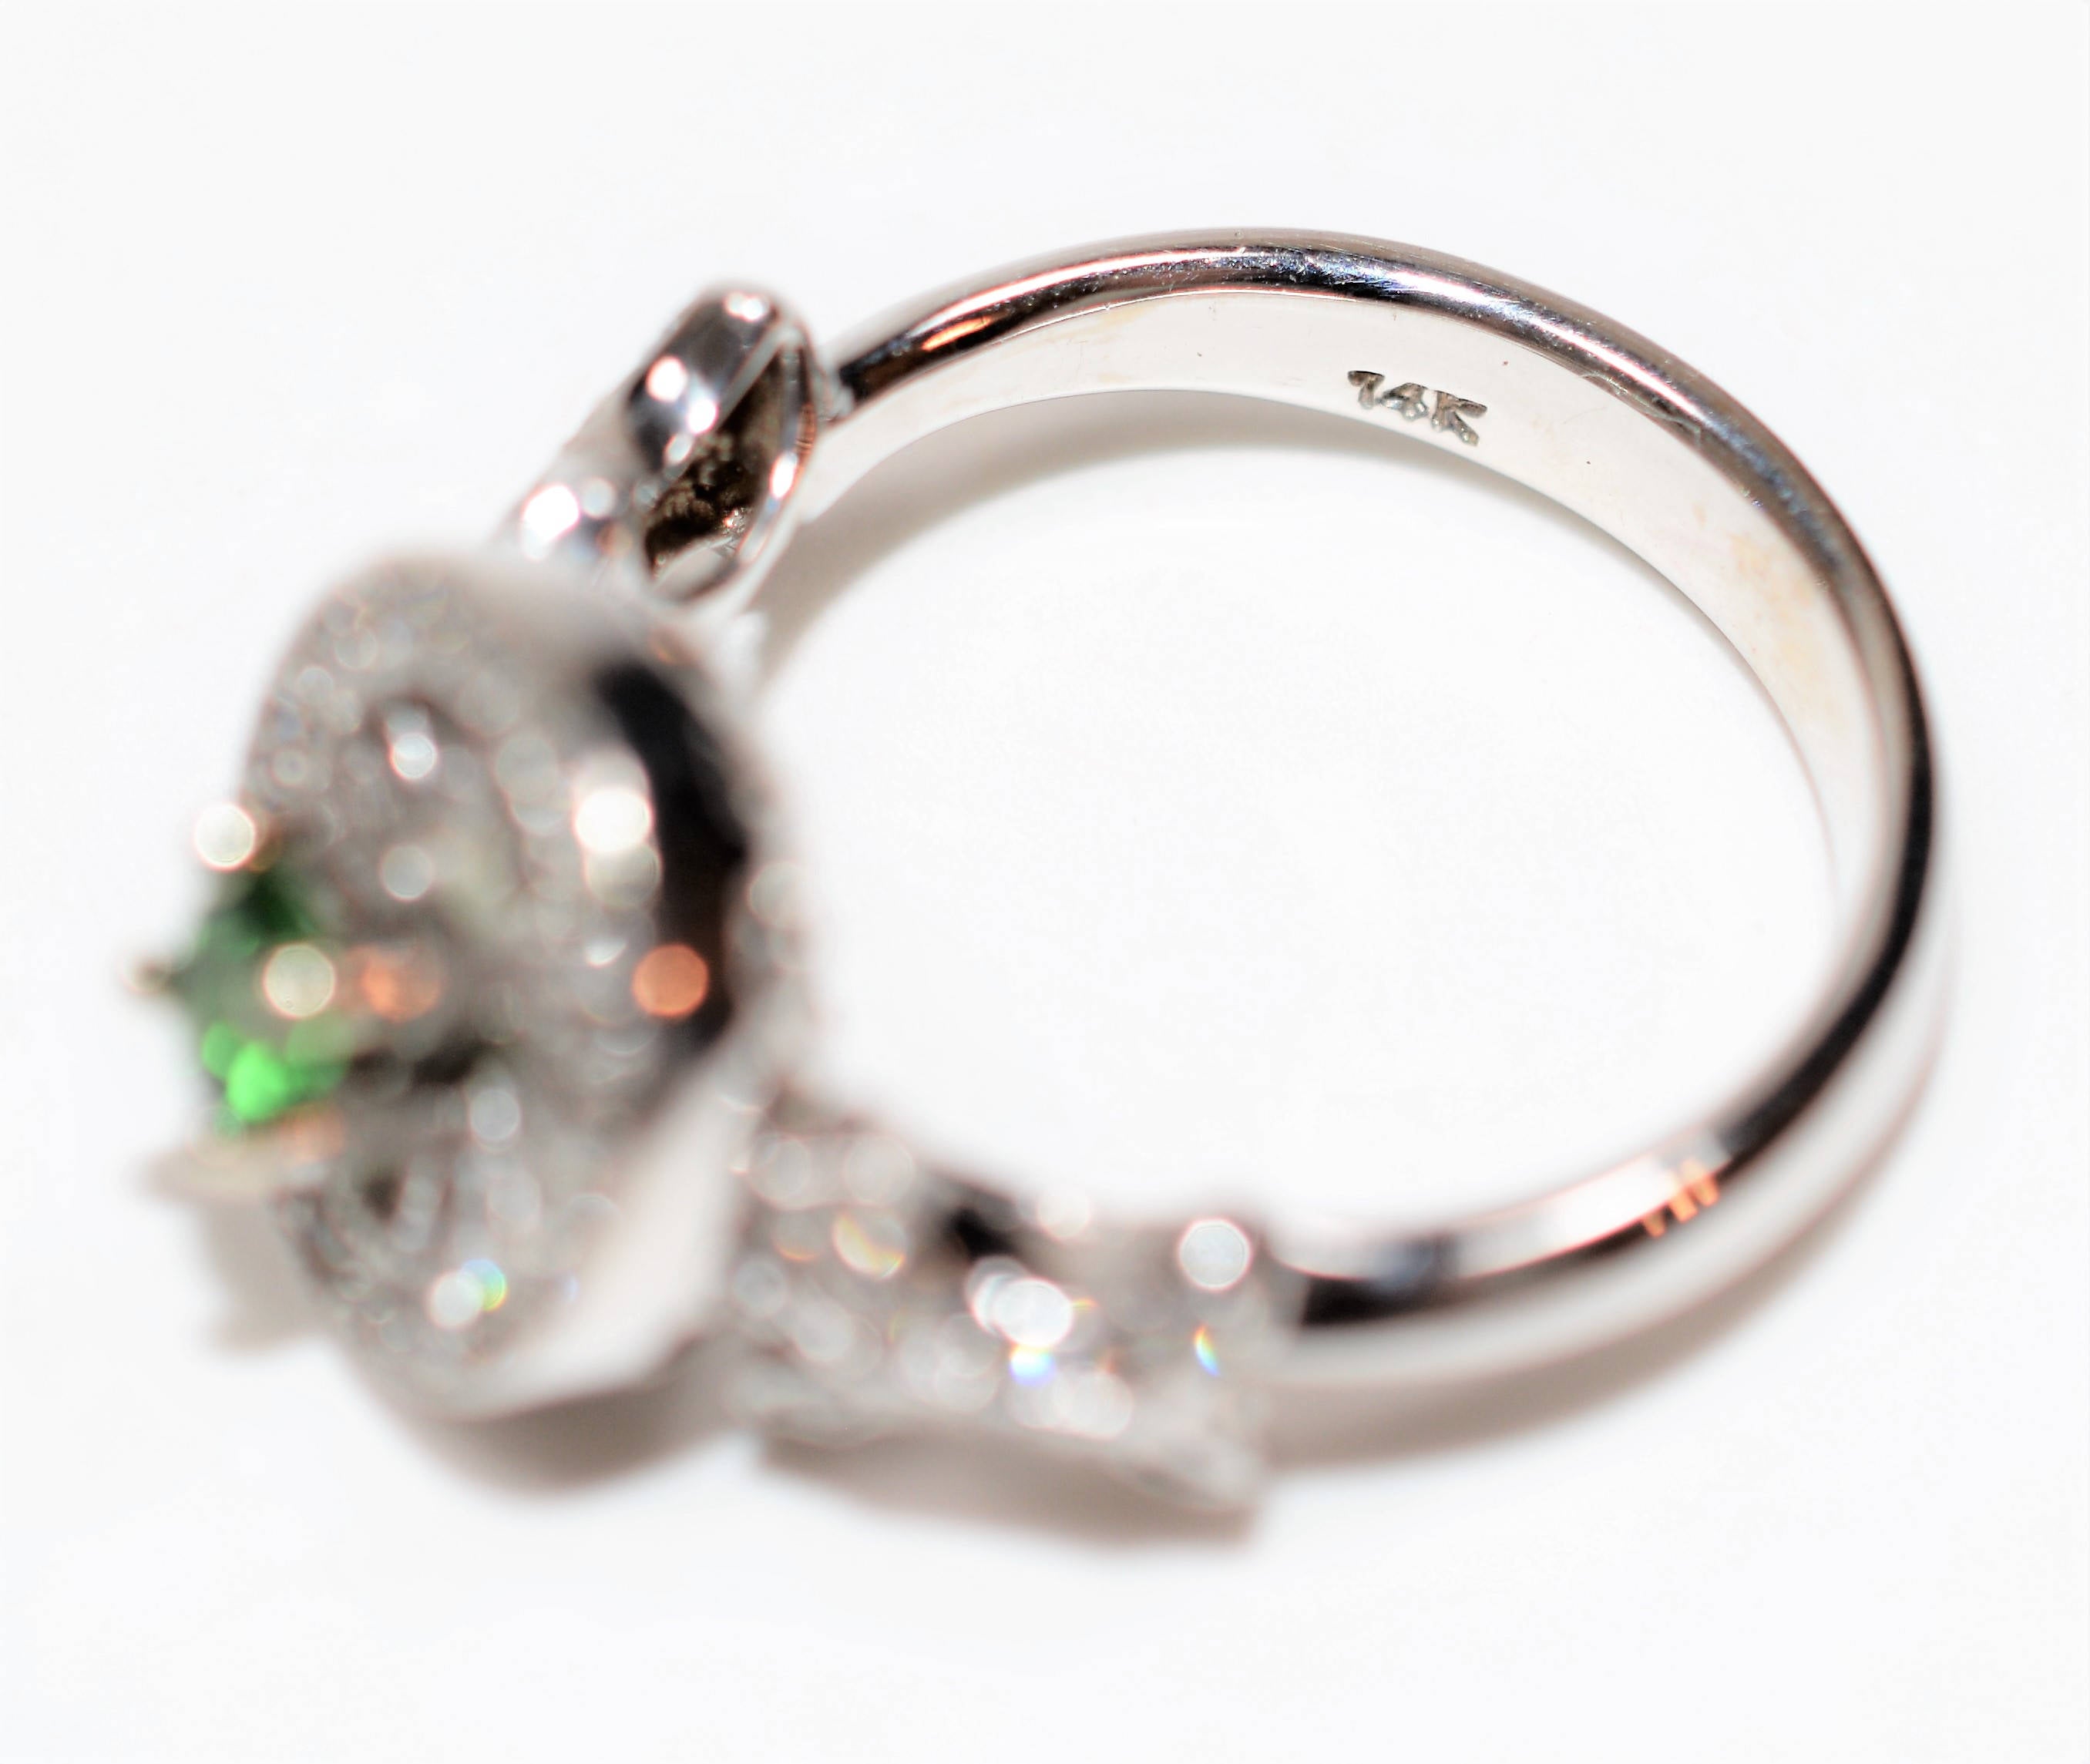 Natural Tsavorite Garnet & Diamond Ring 14K Solid White Gold .65tcw Green Ring Gemstone Ring Cocktail Ring Garnet Ring Ladies Estate Jewelry